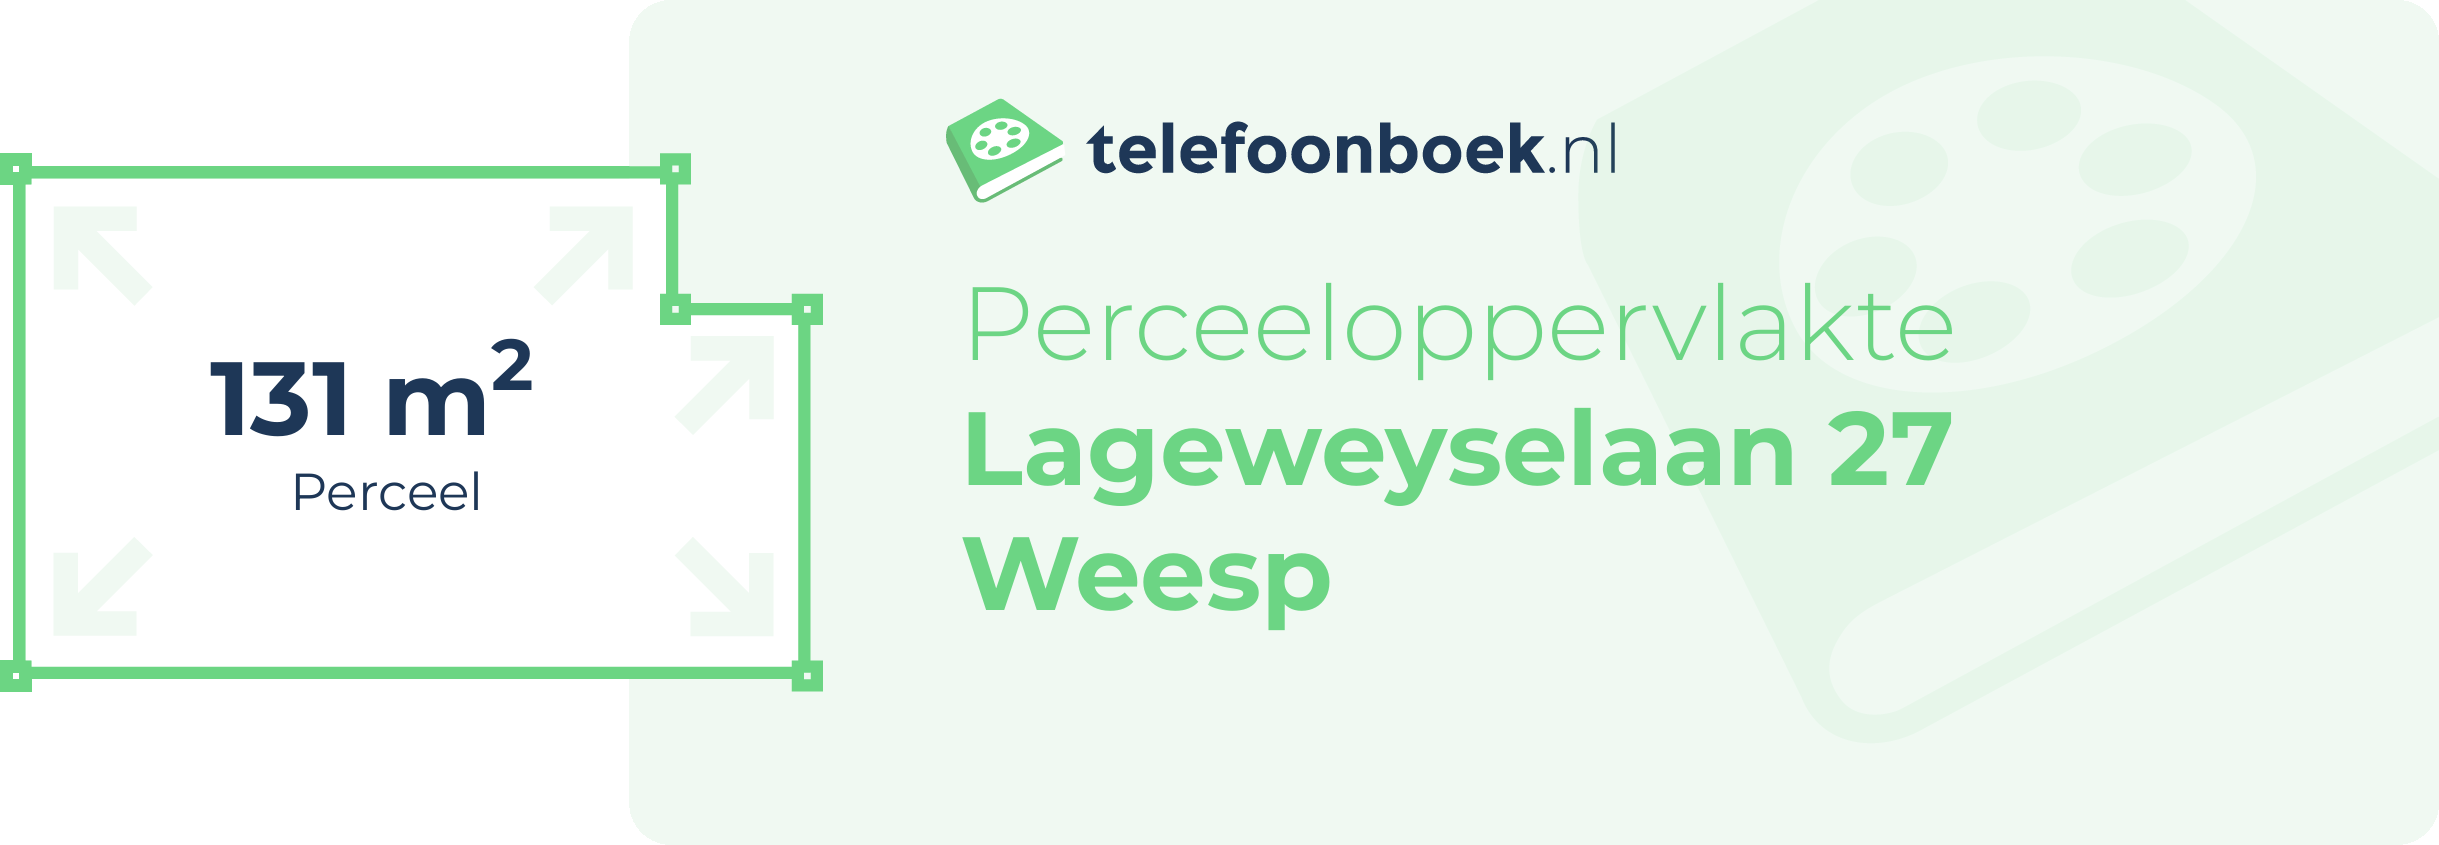 Perceeloppervlakte Lageweyselaan 27 Weesp